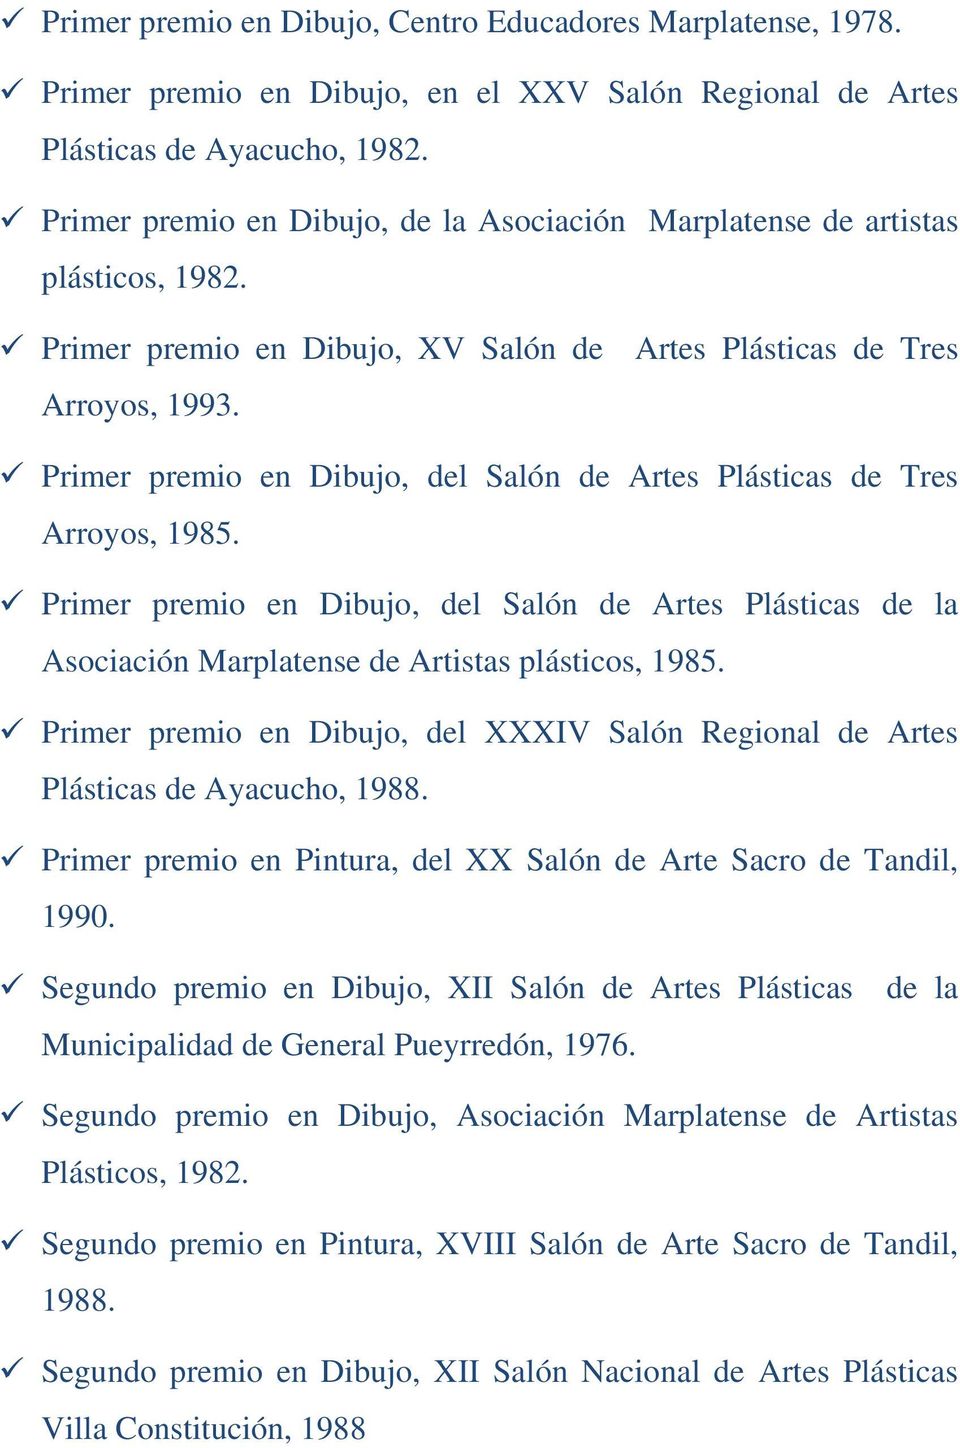 Primer premio en Dibujo, del Salón de Artes Plásticas de Tres Arroyos, 1985. Primer premio en Dibujo, del Salón de Artes Plásticas de la Asociación Marplatense de Artistas plásticos, 1985.